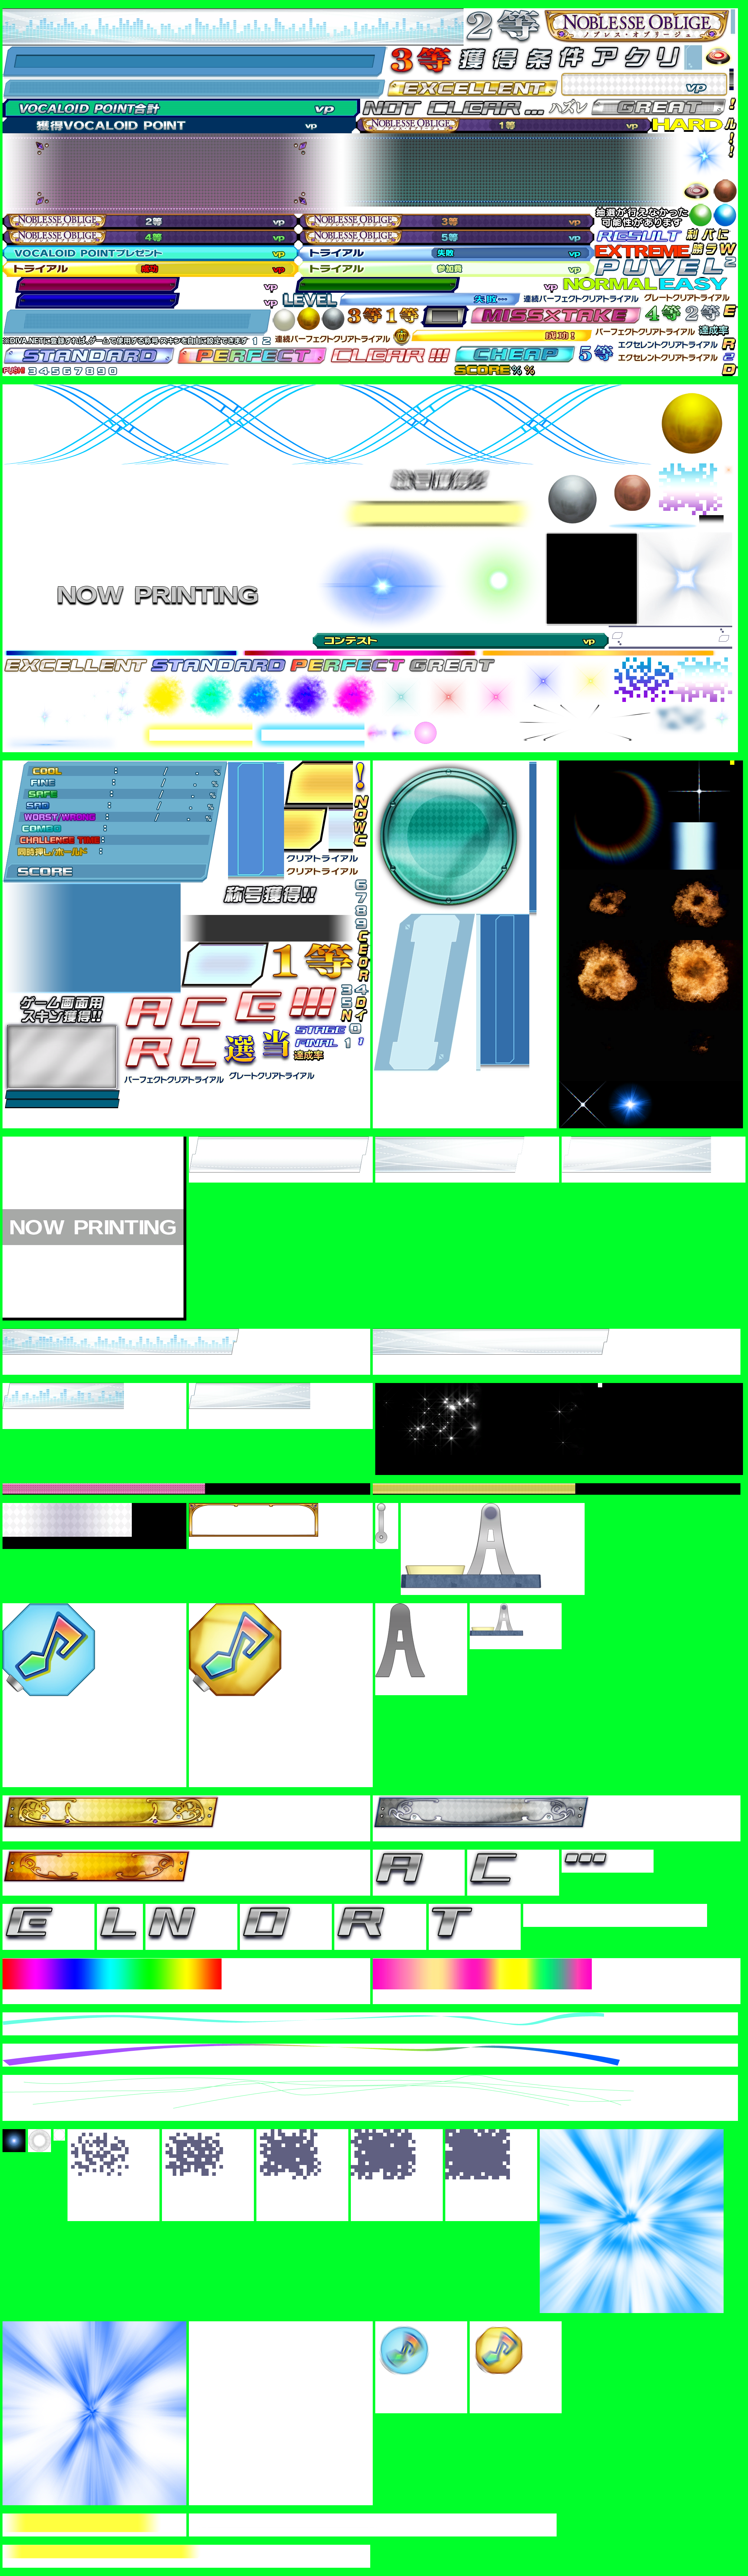 Hatsune Miku: Project DIVA Arcade - Results Screen (Version B)